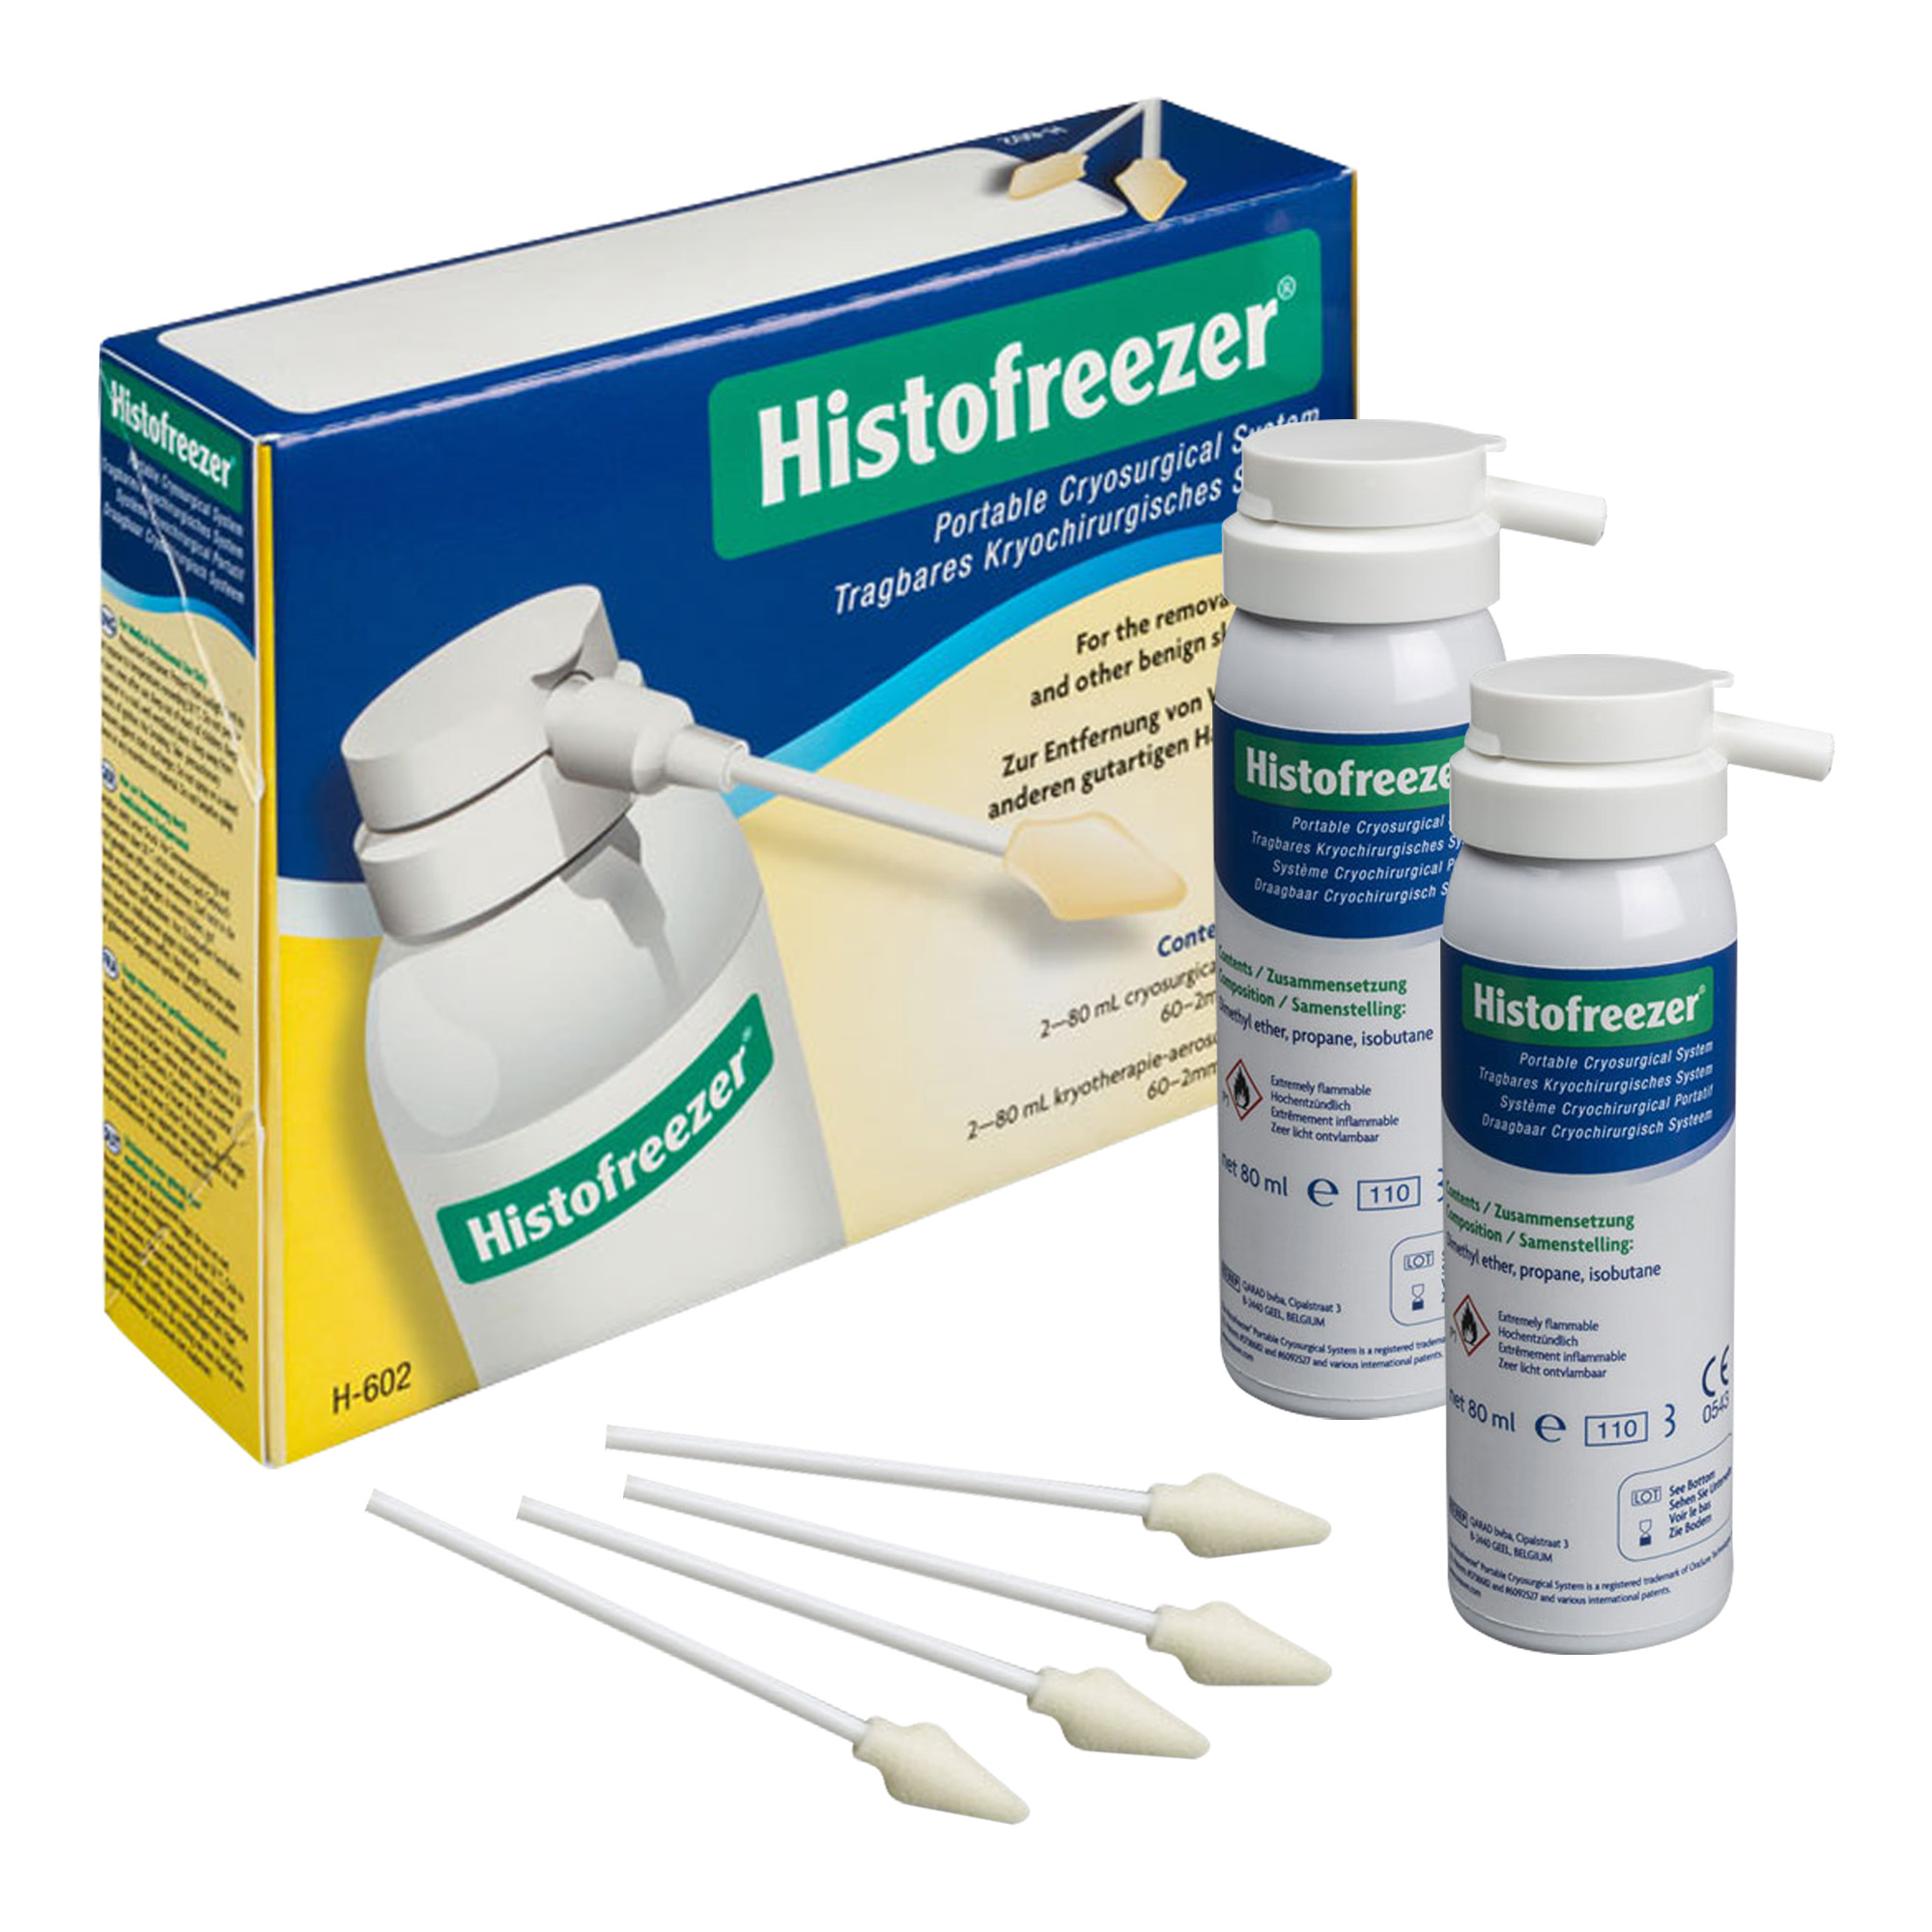 Histofreezer - Traitement des verrues plantaires par cryothérapie avec 2 flacons de 80 ml et 60 applicateurs jetables de 2 mm.